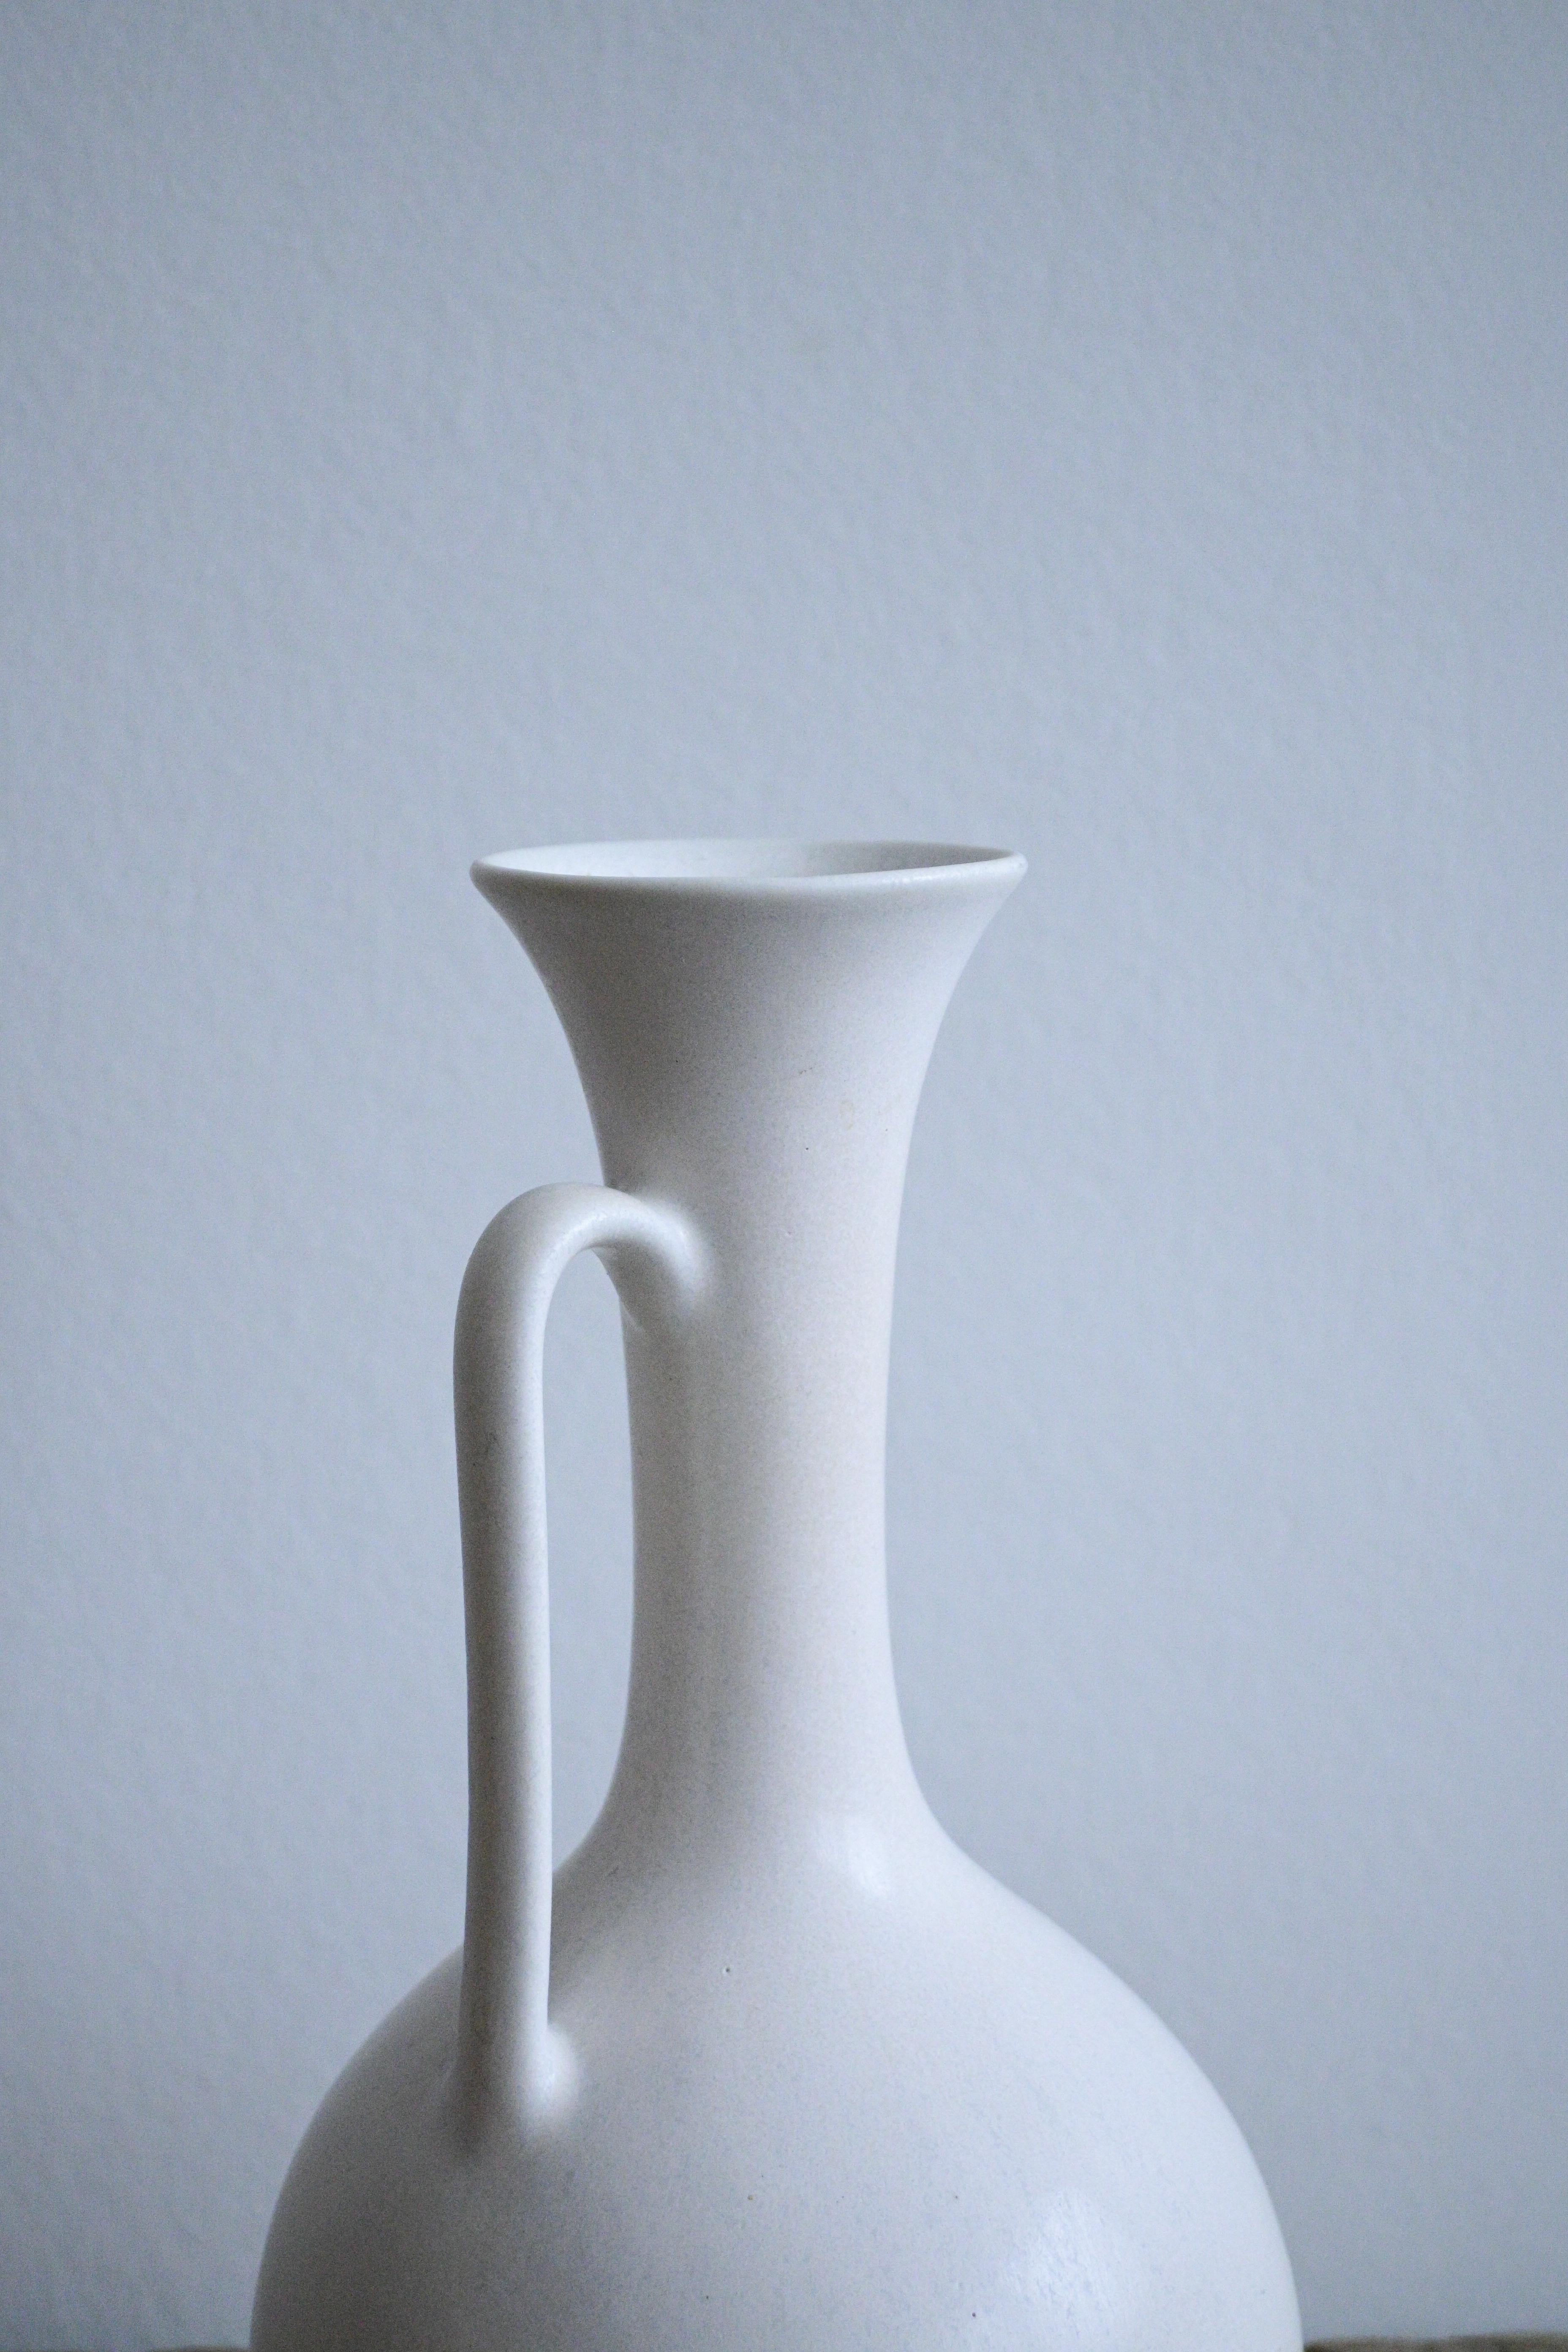 Seltene große milchweiße Vase von Gunnar Nylund für Rörstrand, Schweden, 1950er Jahre

Die Vase ist als 1. Qualität gekennzeichnet und befindet sich in ausgezeichnetem Zustand.

Gunnar Nylund (1904-1997) war ein renommierter schwedischer